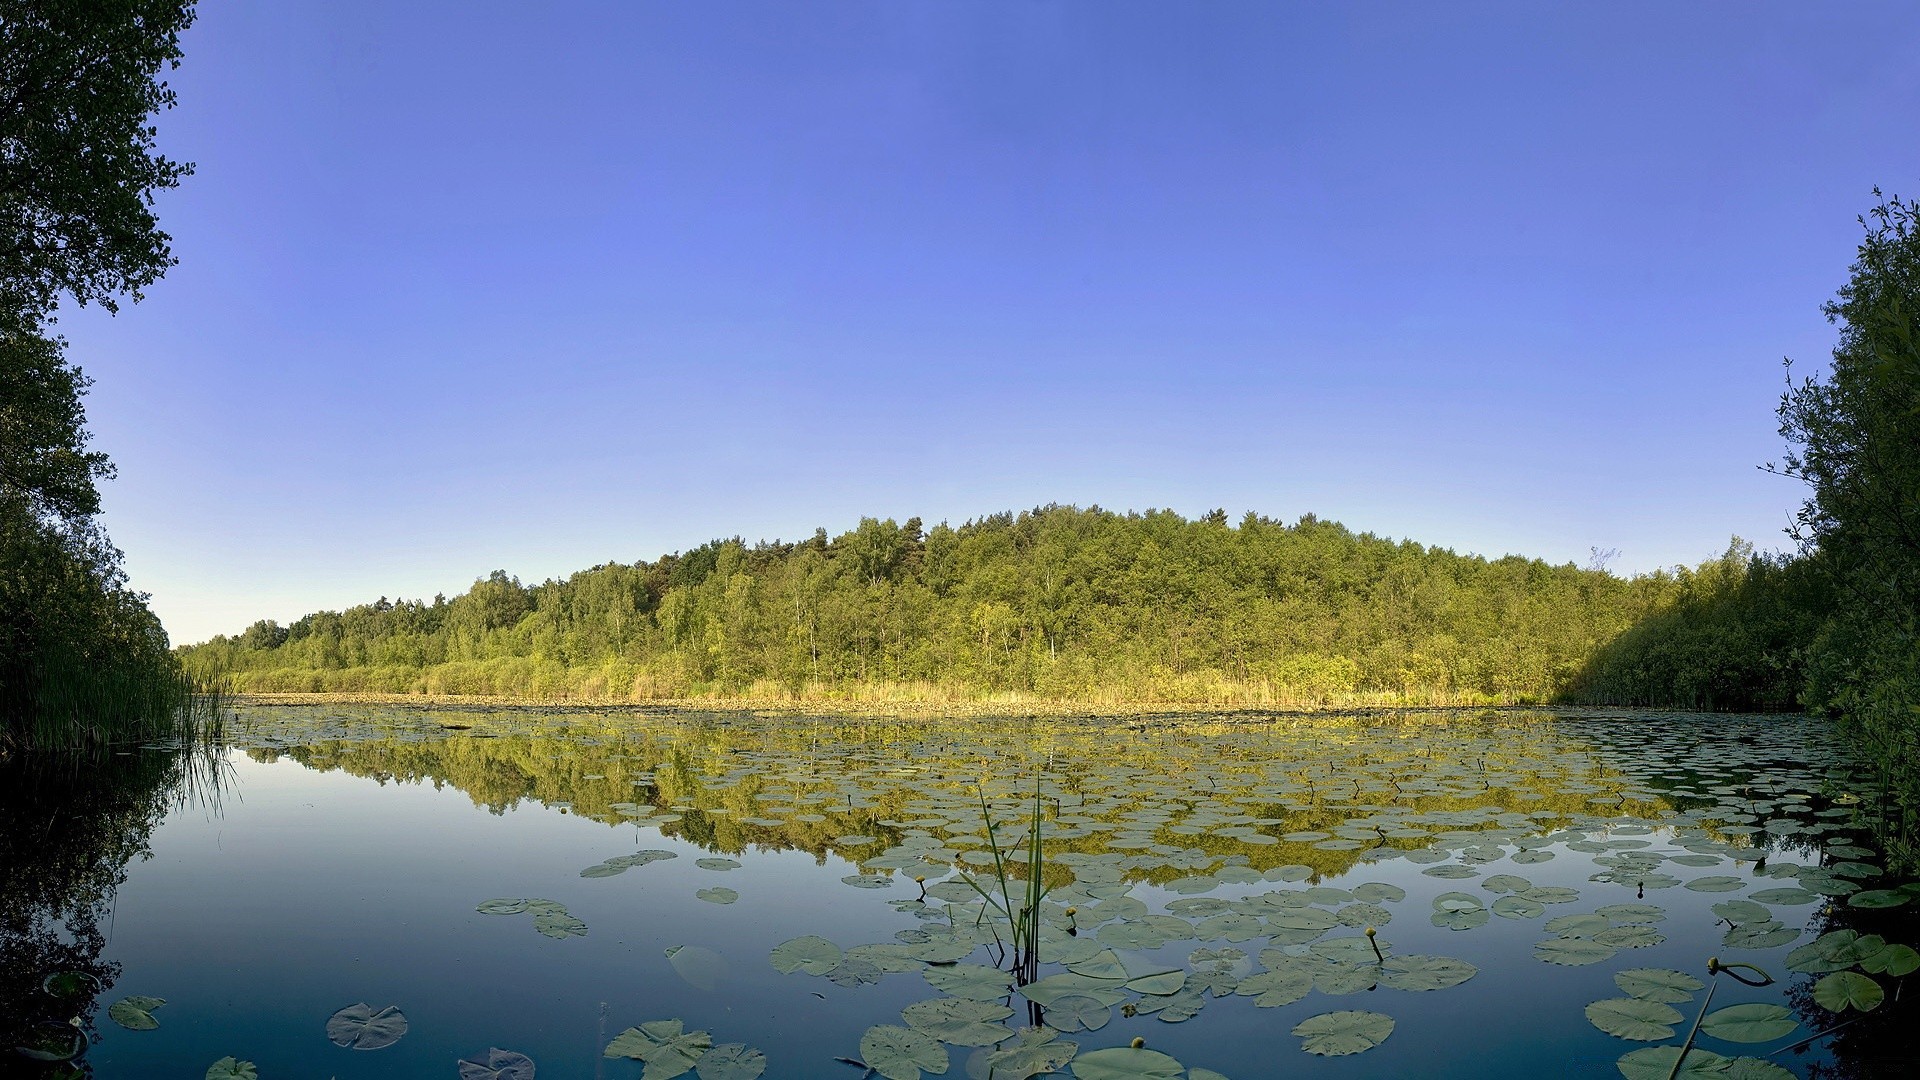 озера воды отражение дерево река пейзаж на открытом воздухе природа небо древесины живописный путешествия бассейн дневной свет лето